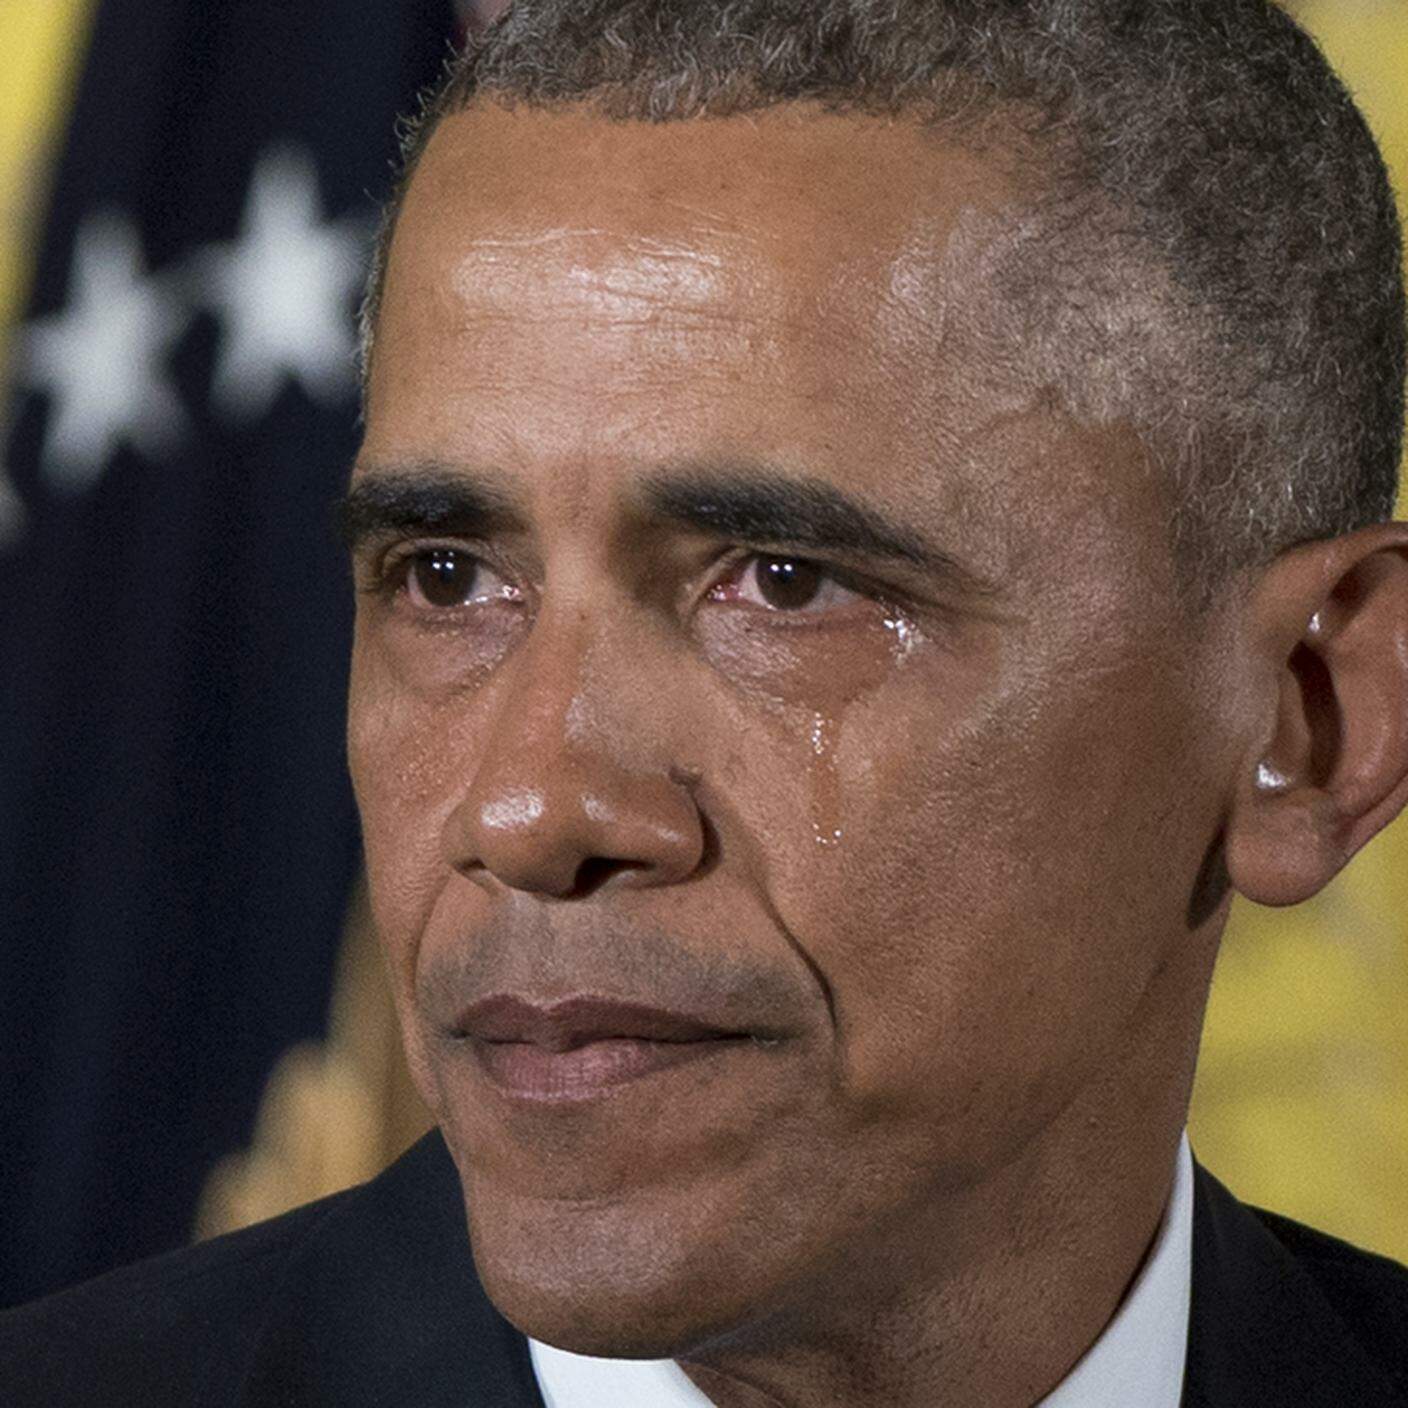 Una lacrima sul volto di Barack Obama.jpg